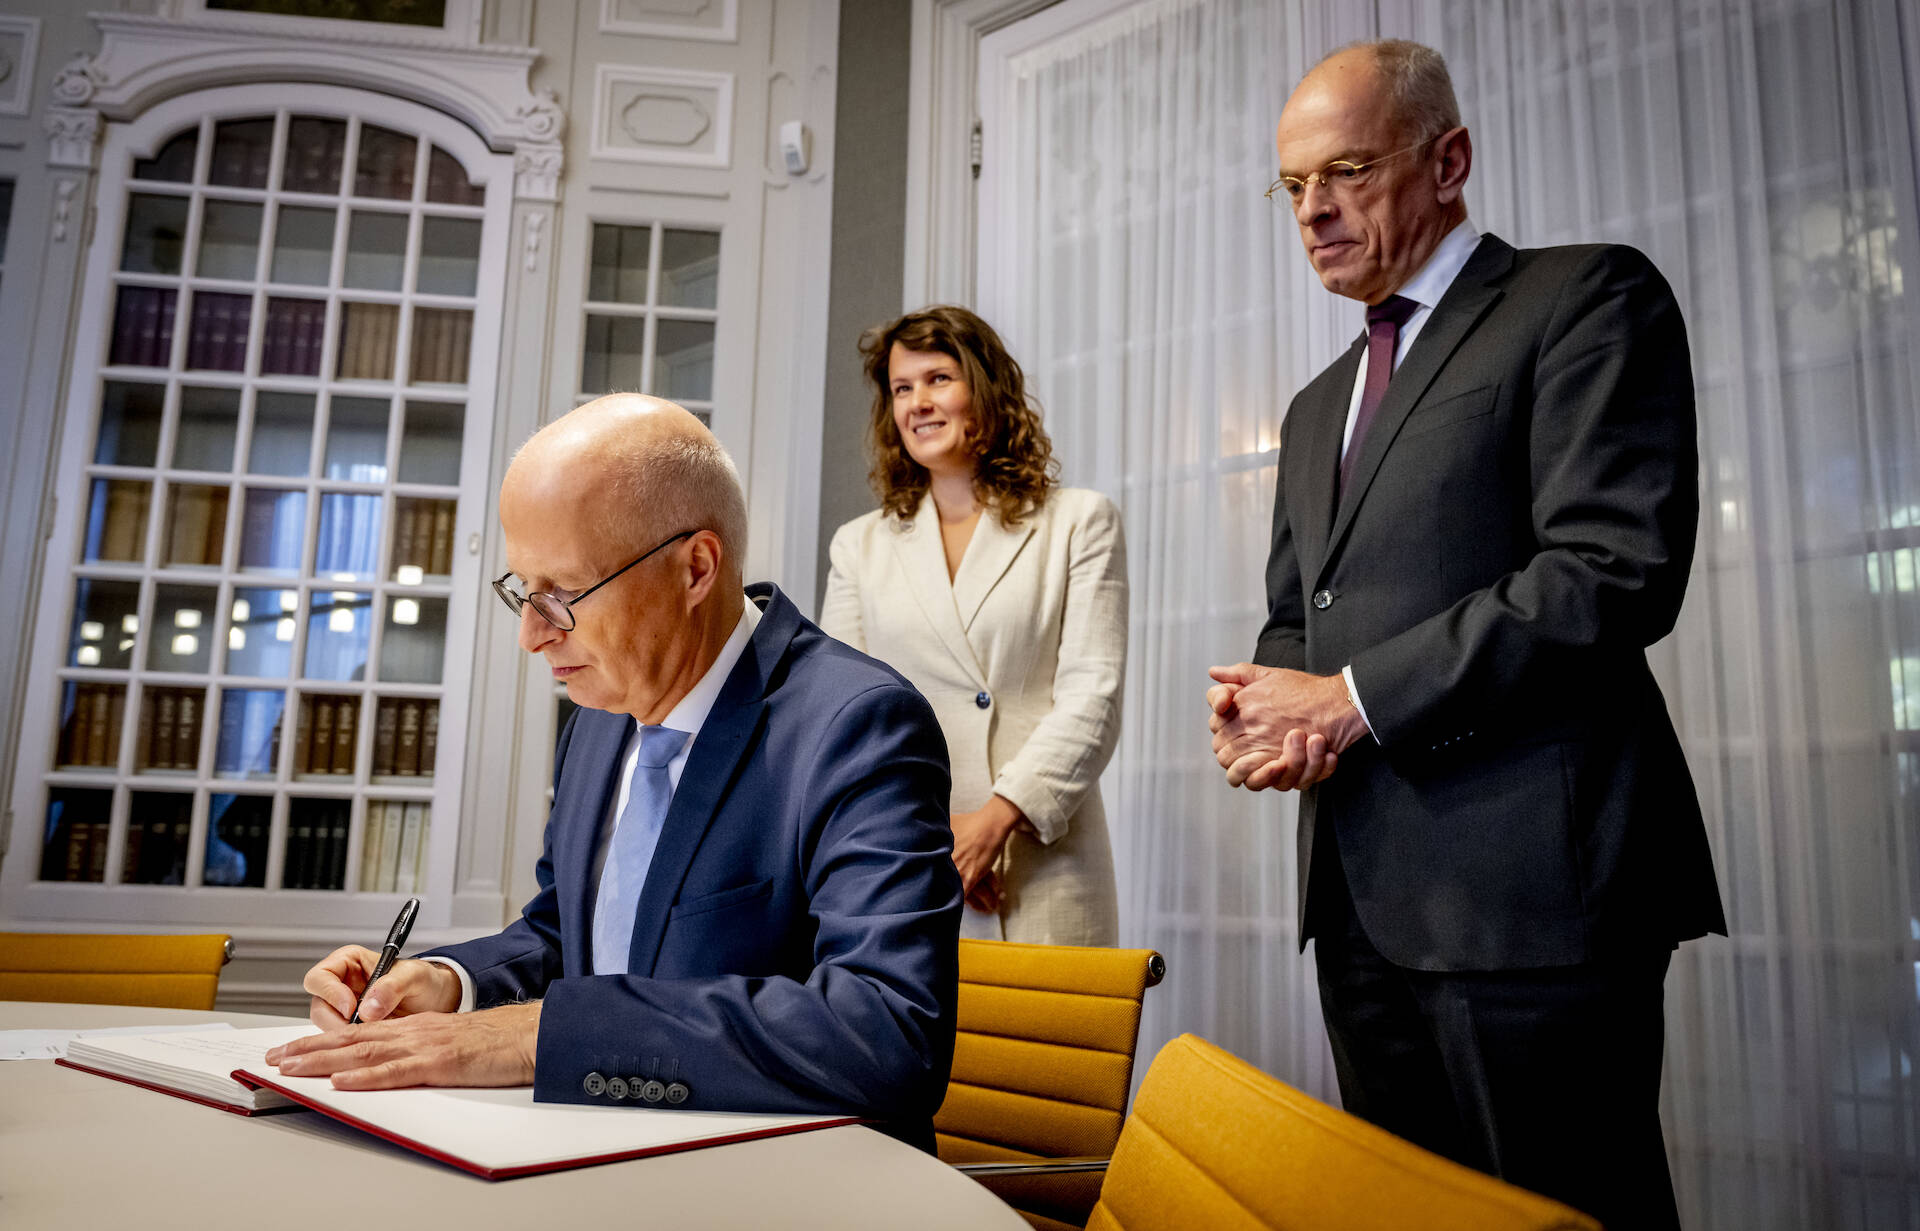 Voorzitter Duitse Bundesrat tekent het gastenboek